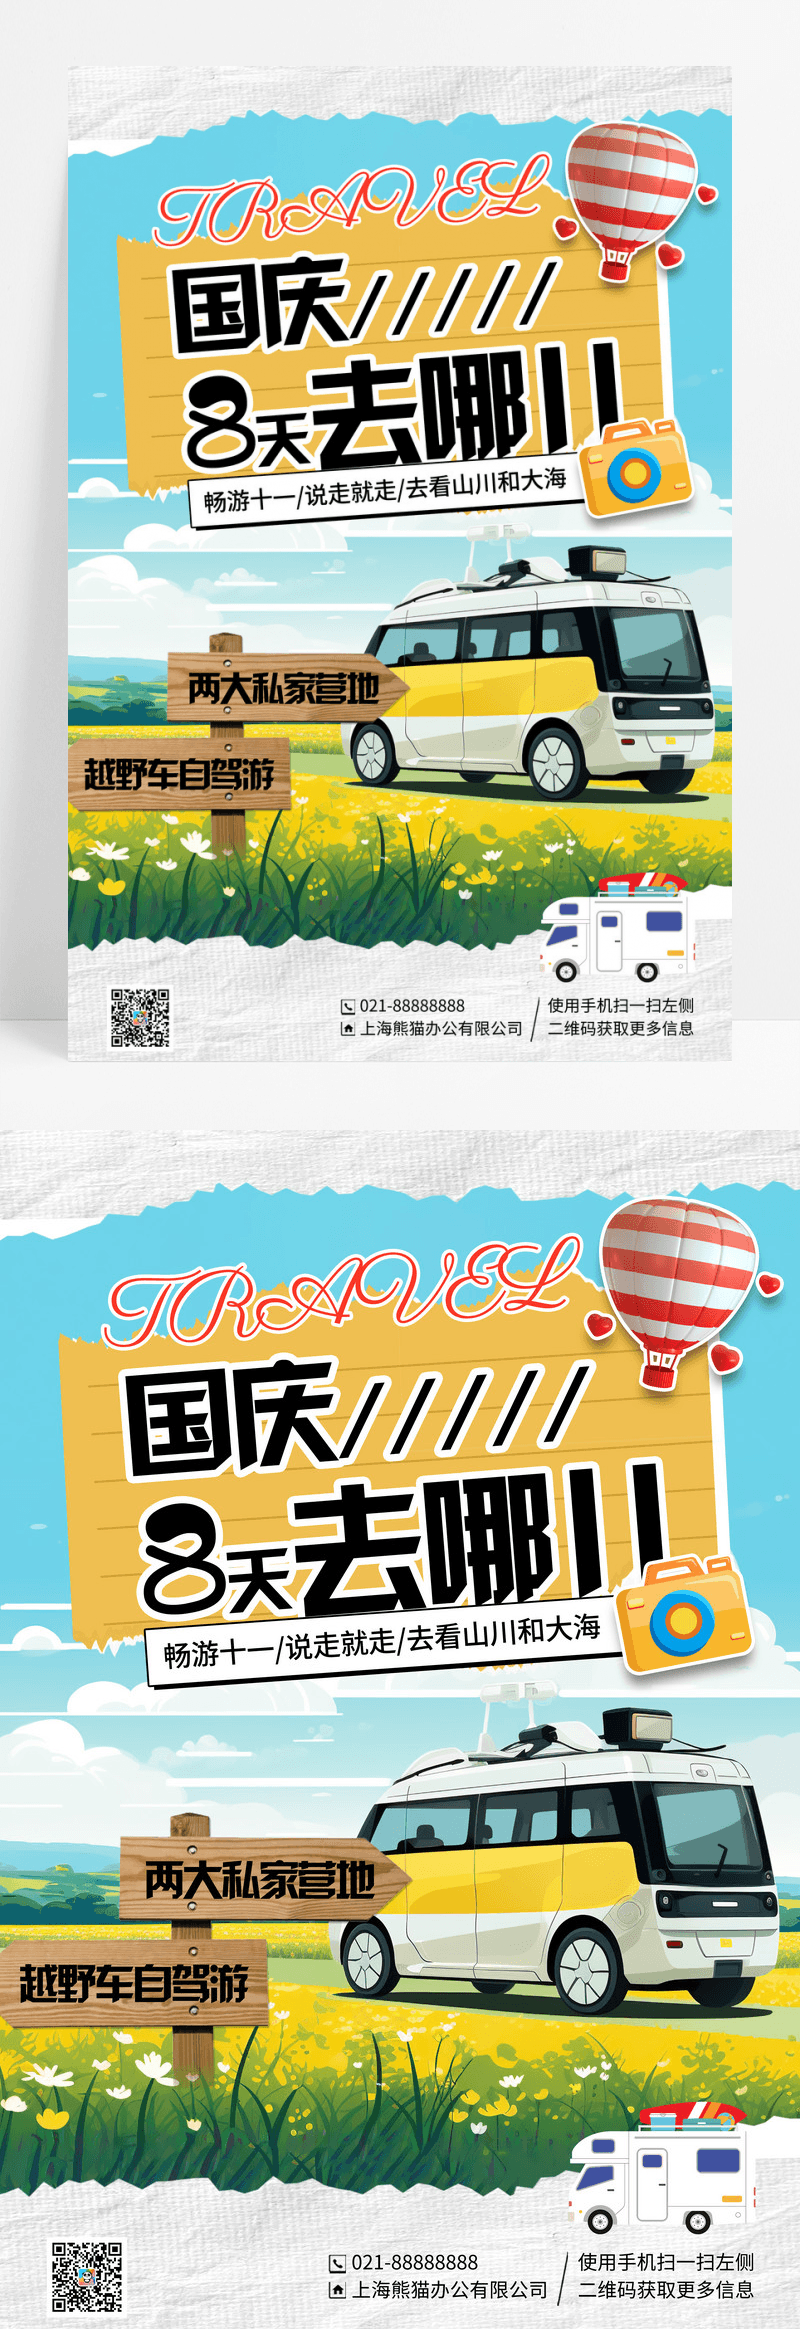 创意拼贴插画国庆旅游宣传海报